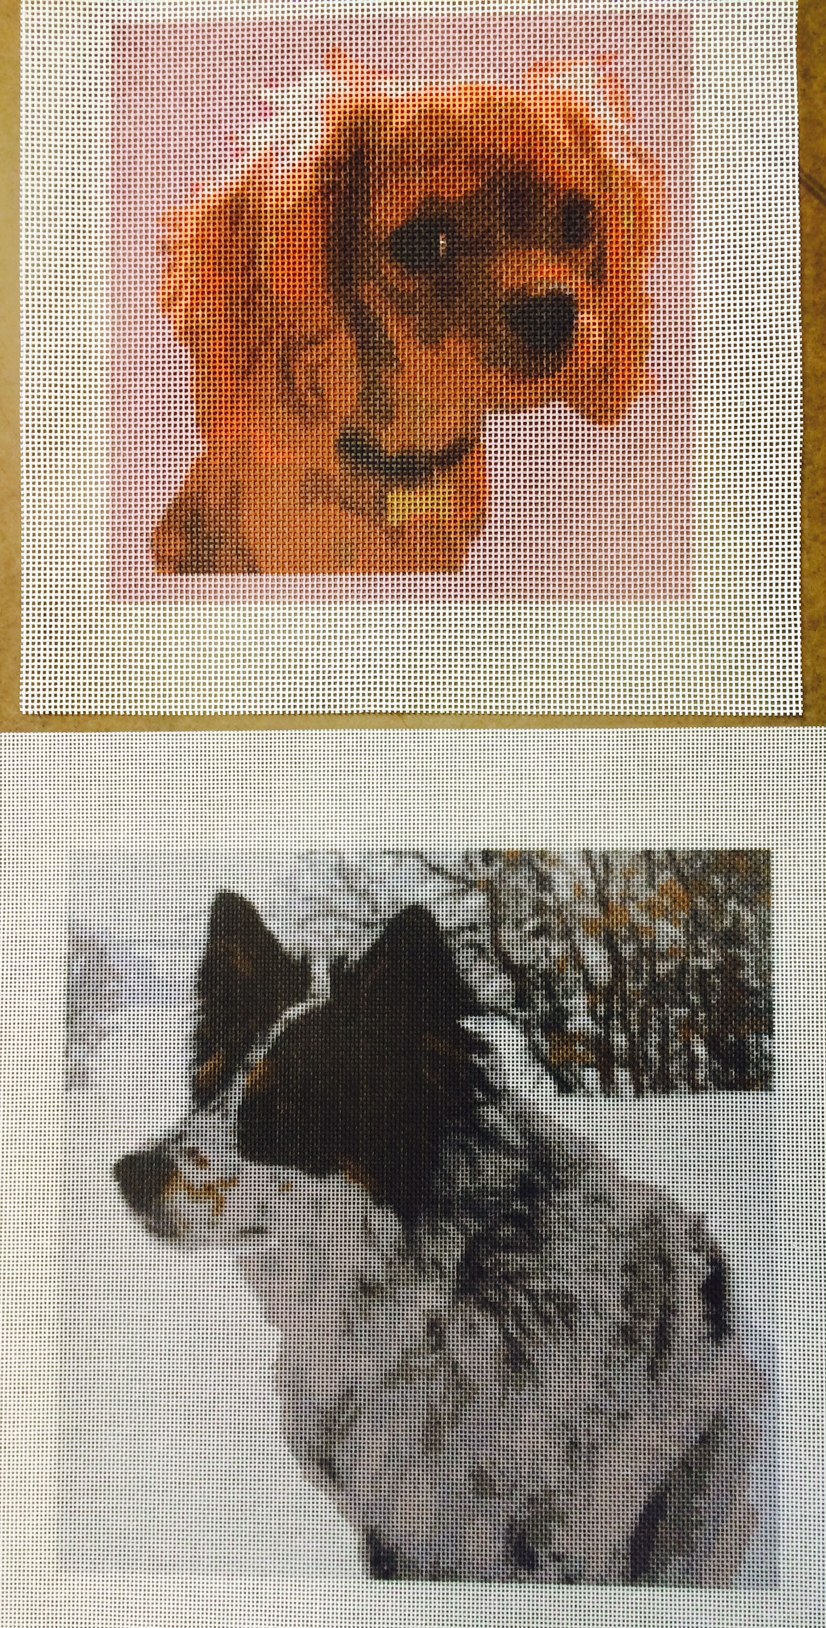 Custom Dog Needlepoint Canvases